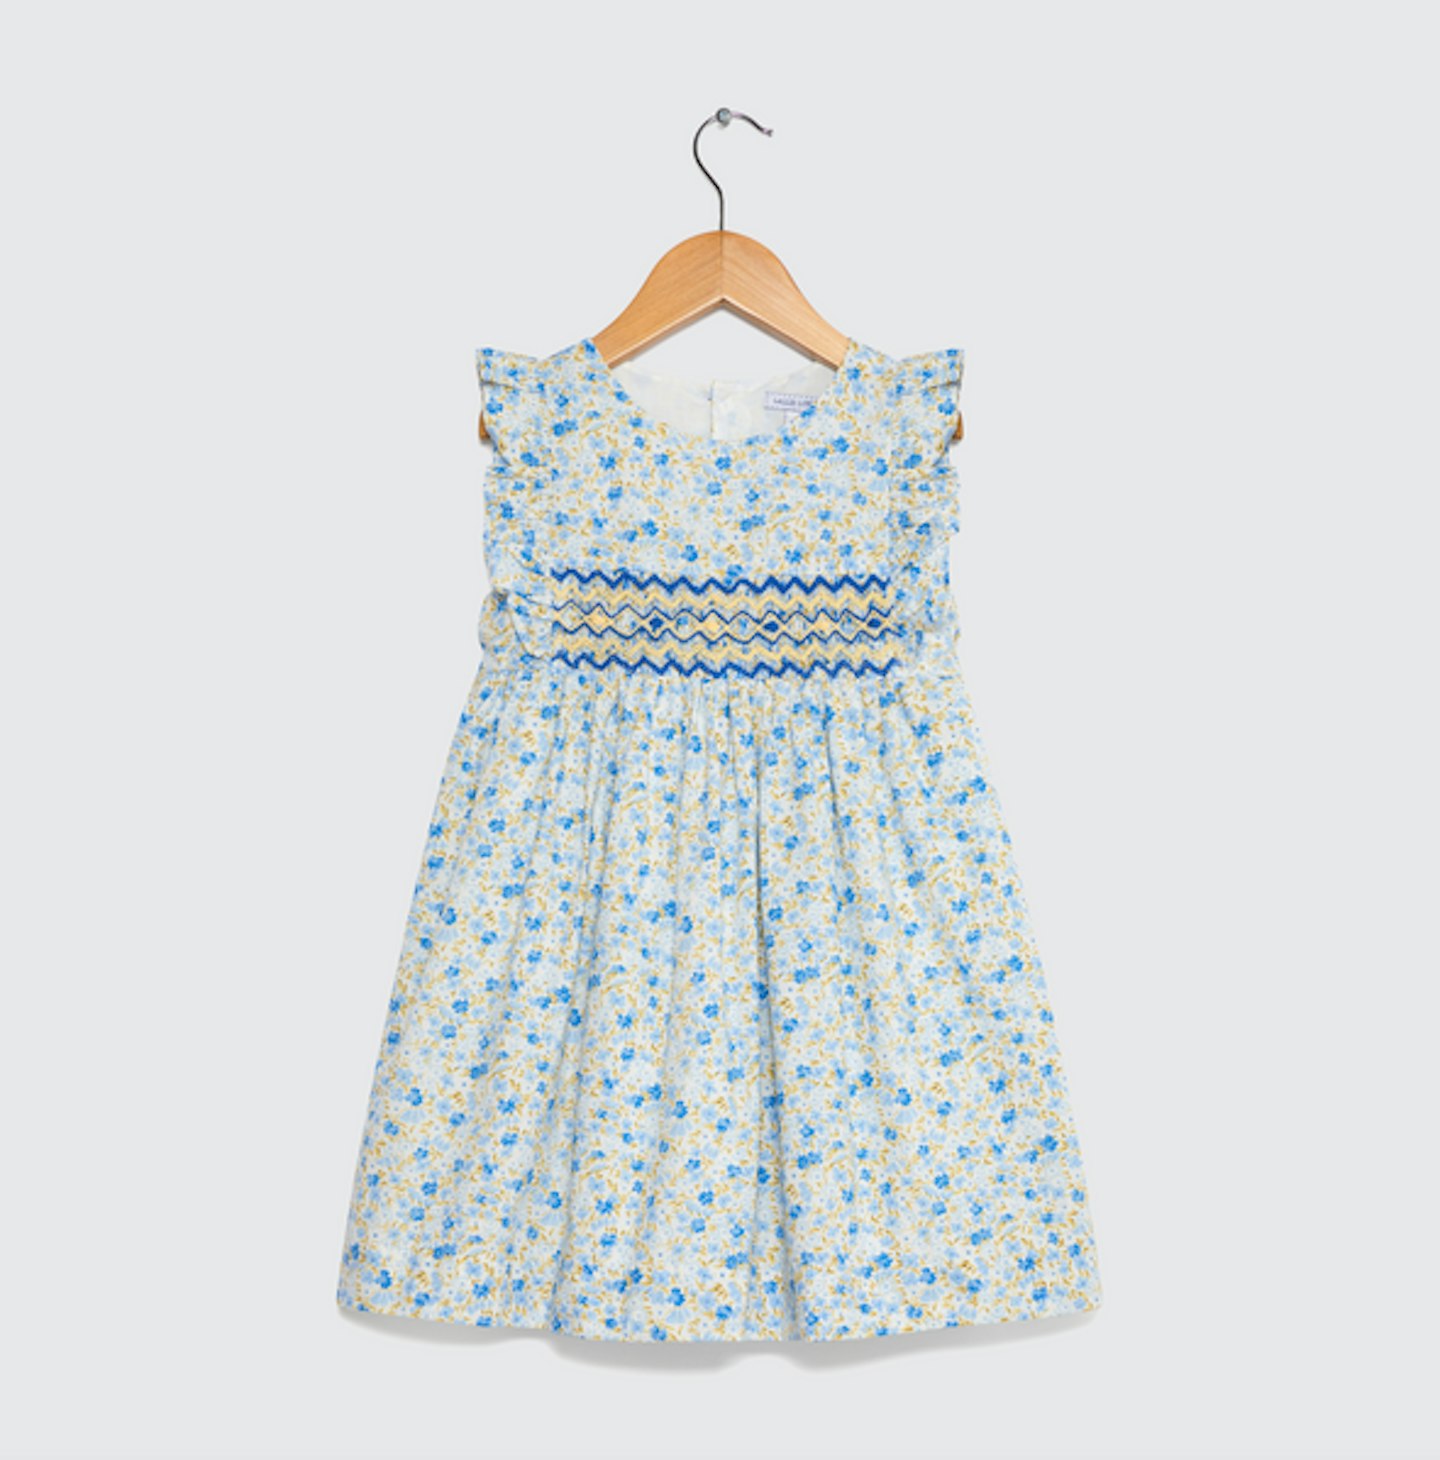 Little Alice London, Windflower Smocked Dress, £58